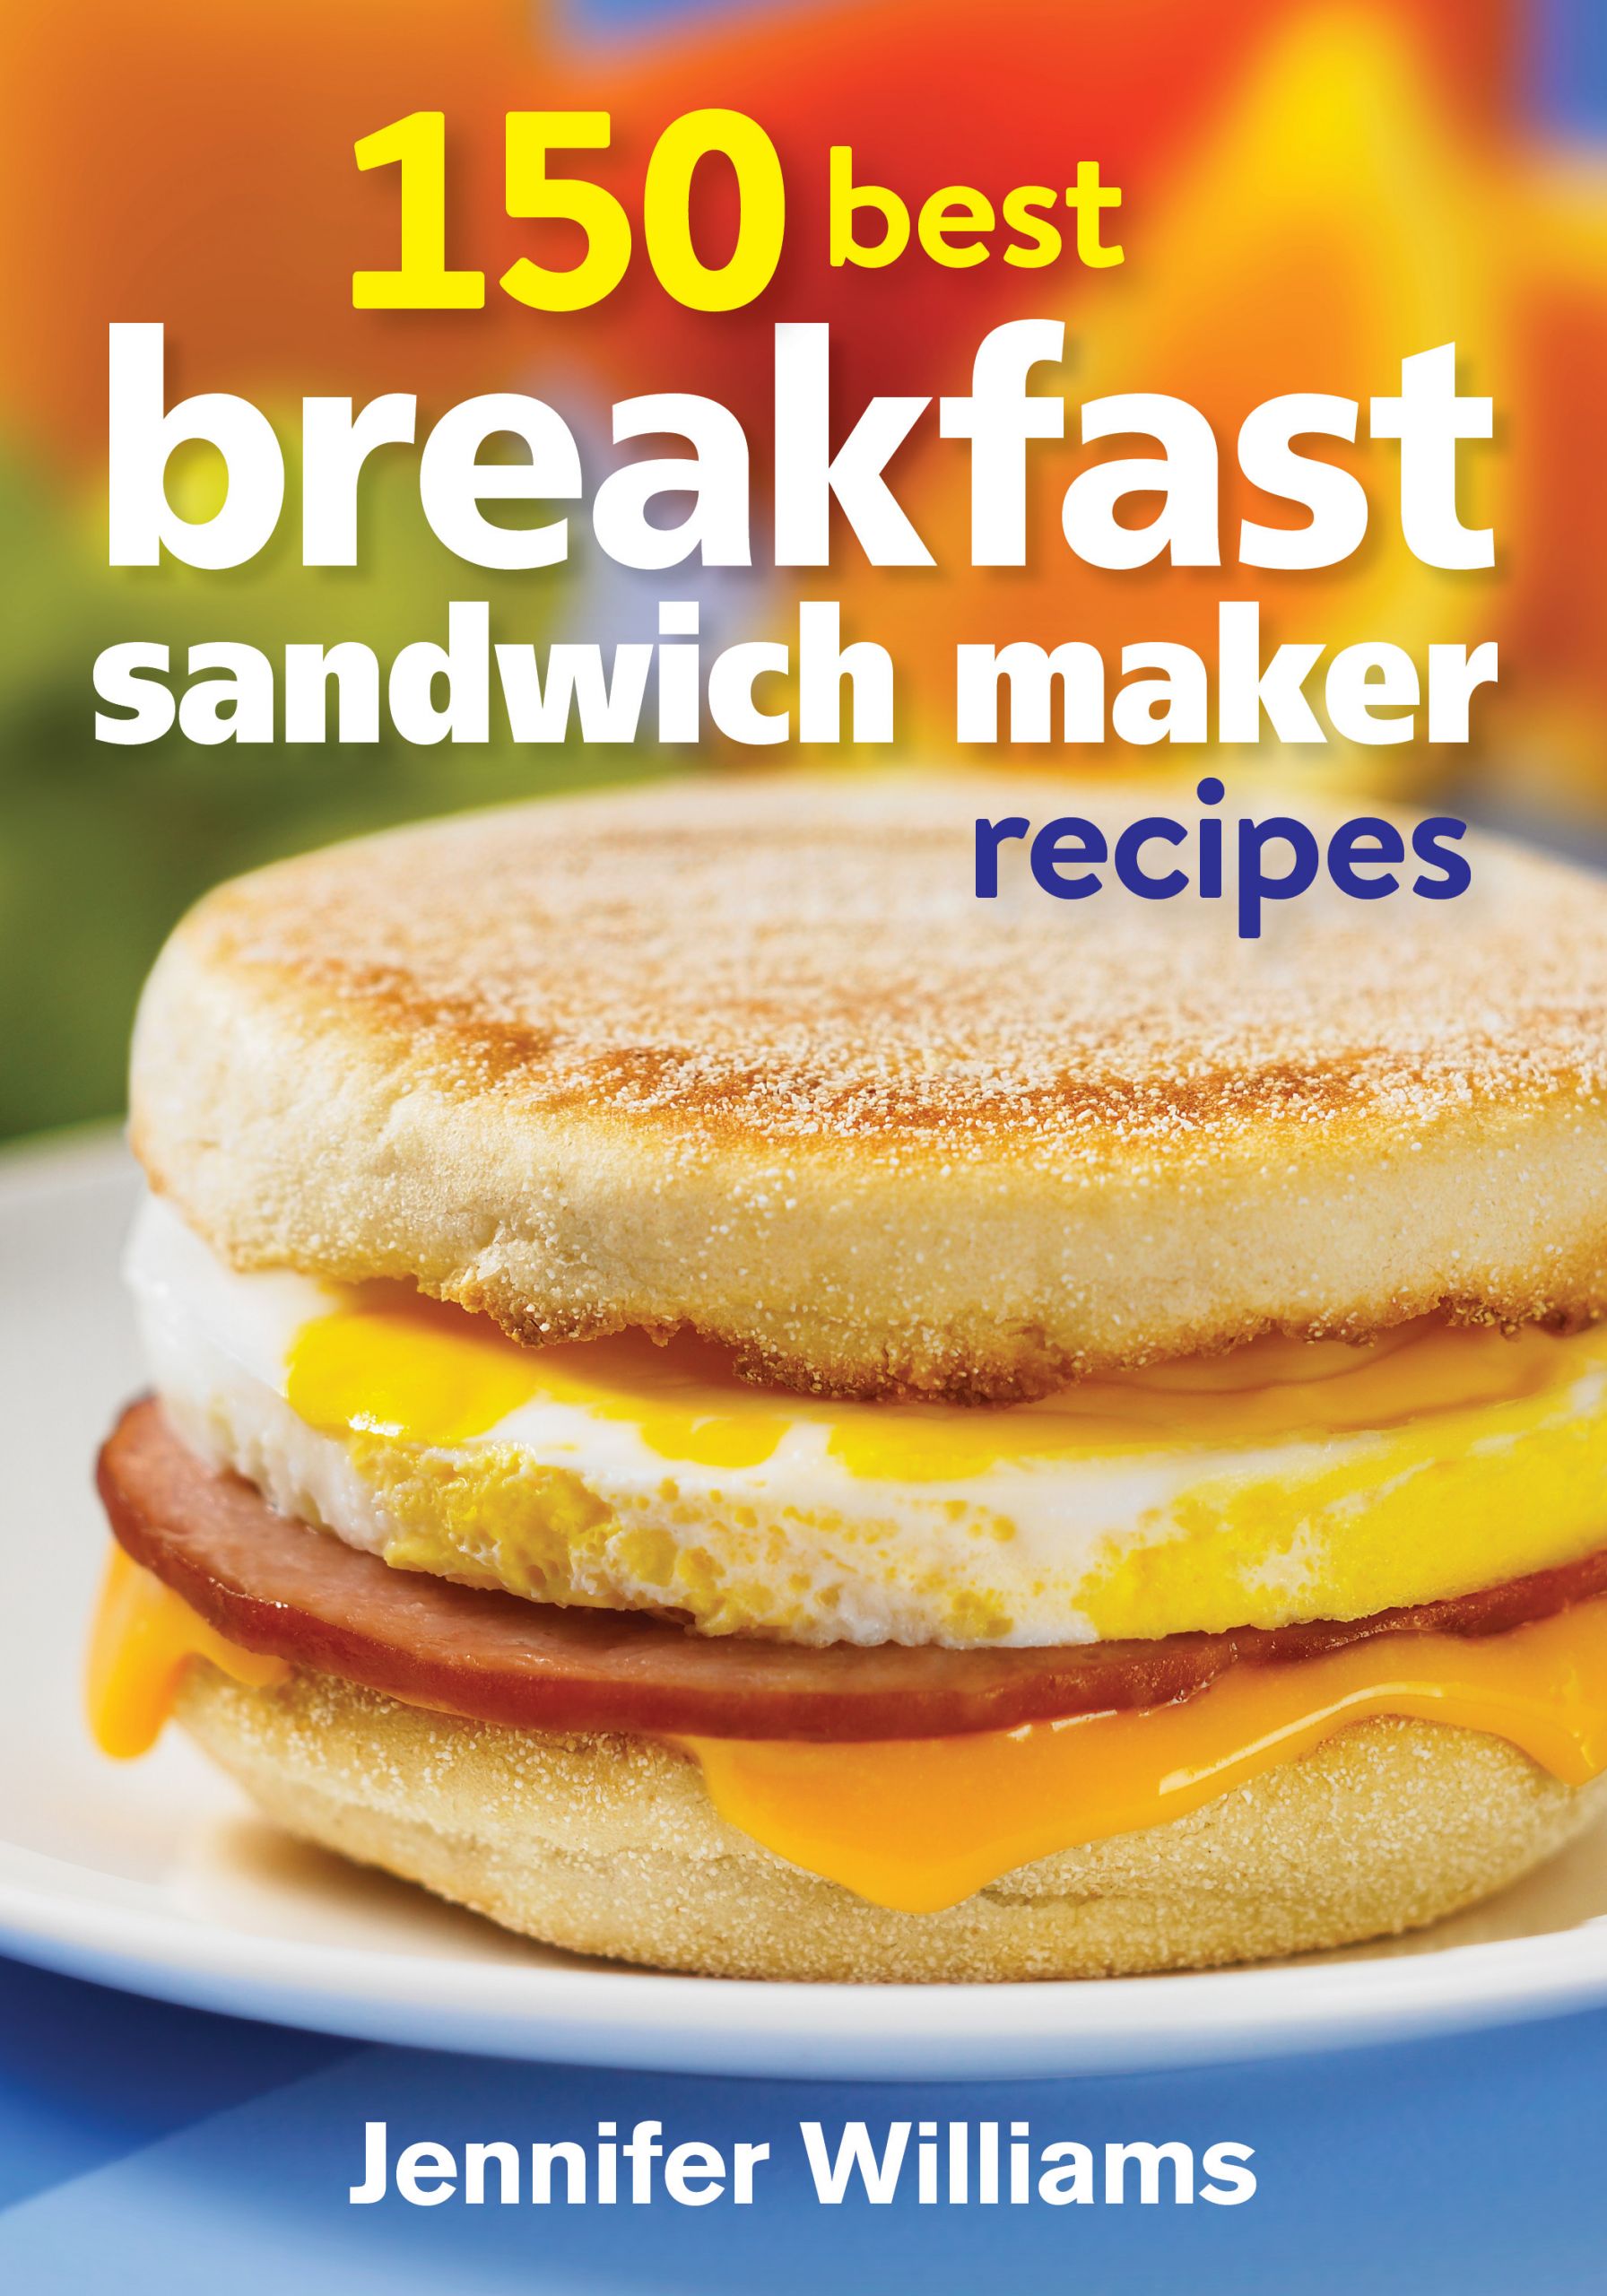 15 Great Breakfast Sandwich Maker Recipes